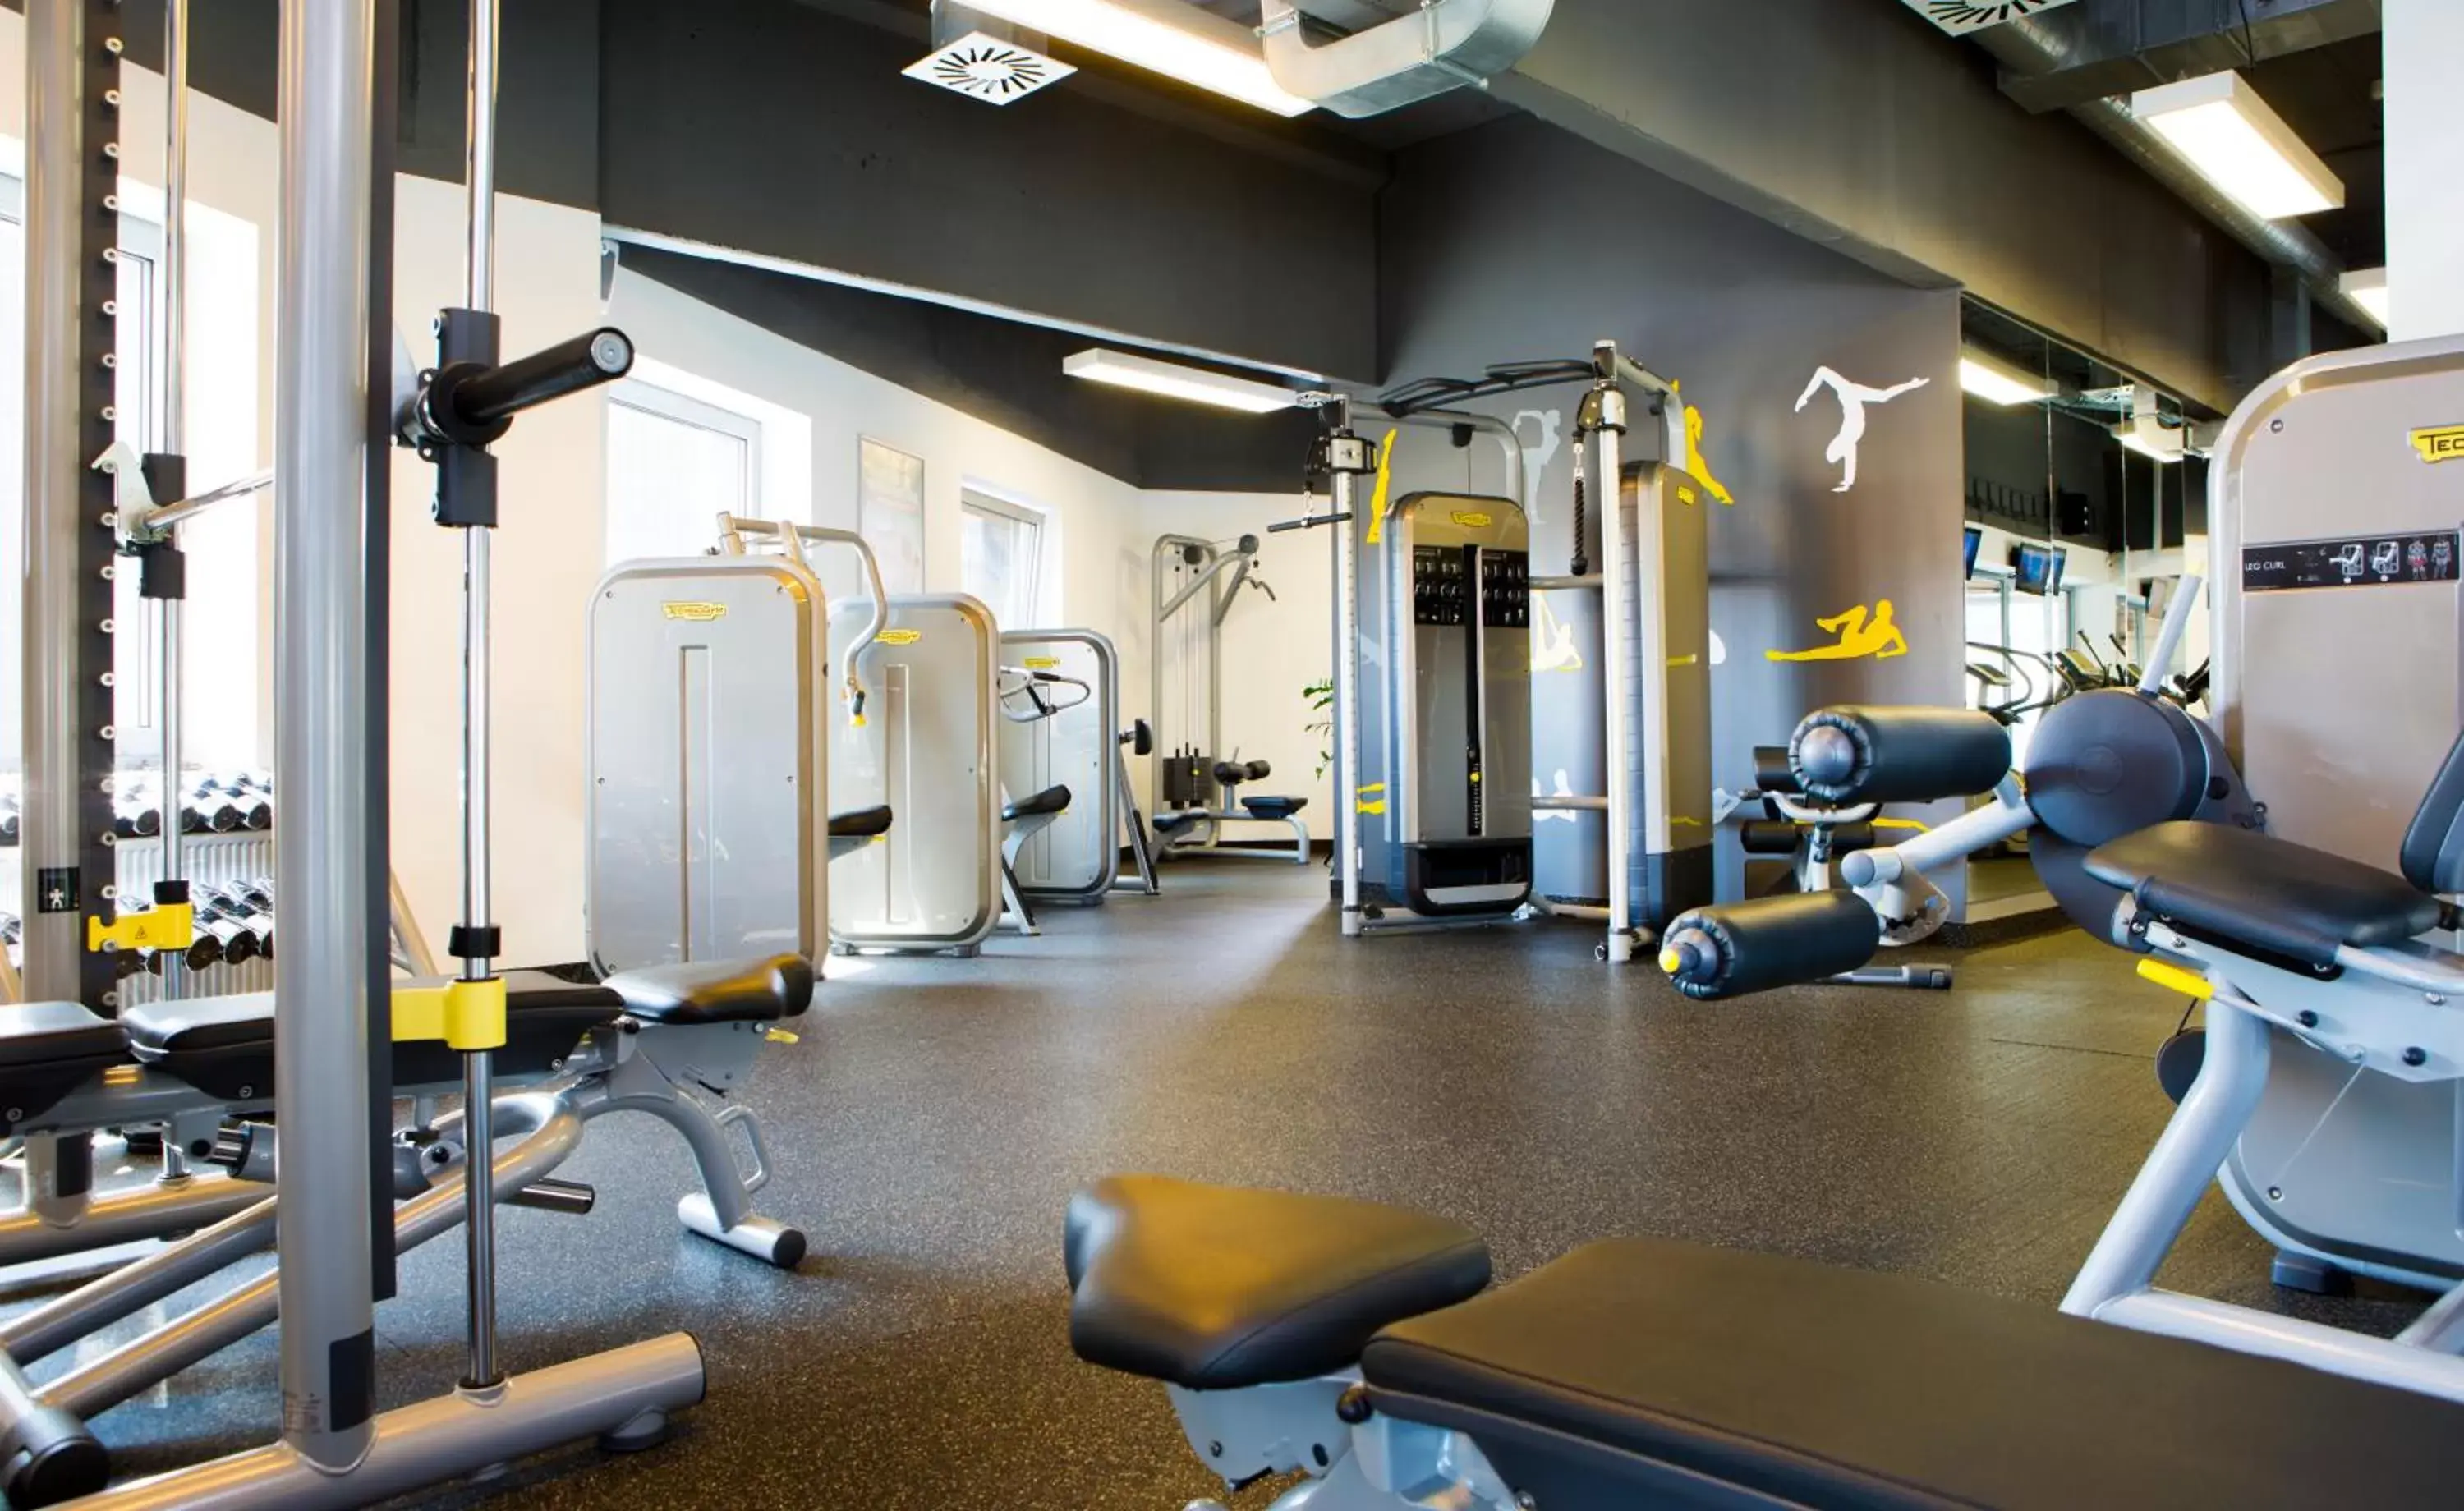 Fitness centre/facilities, Fitness Center/Facilities in OREA Hotel Pyramida Praha